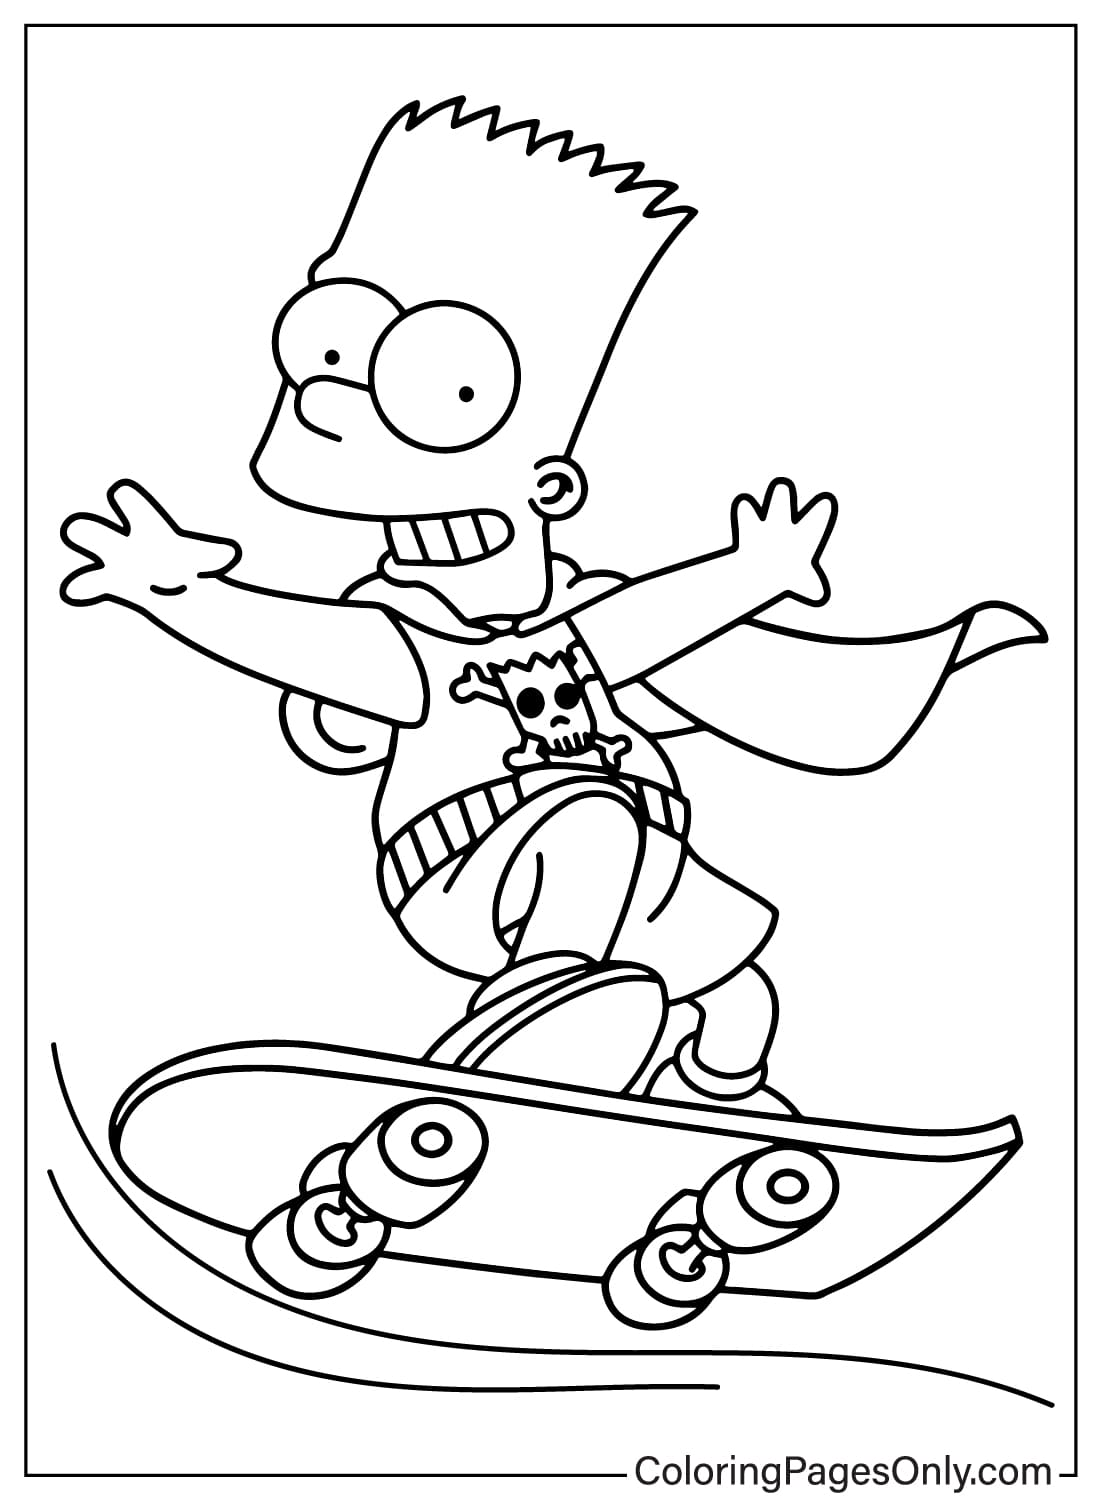 Coloriage Bart Simpson des Simpsons